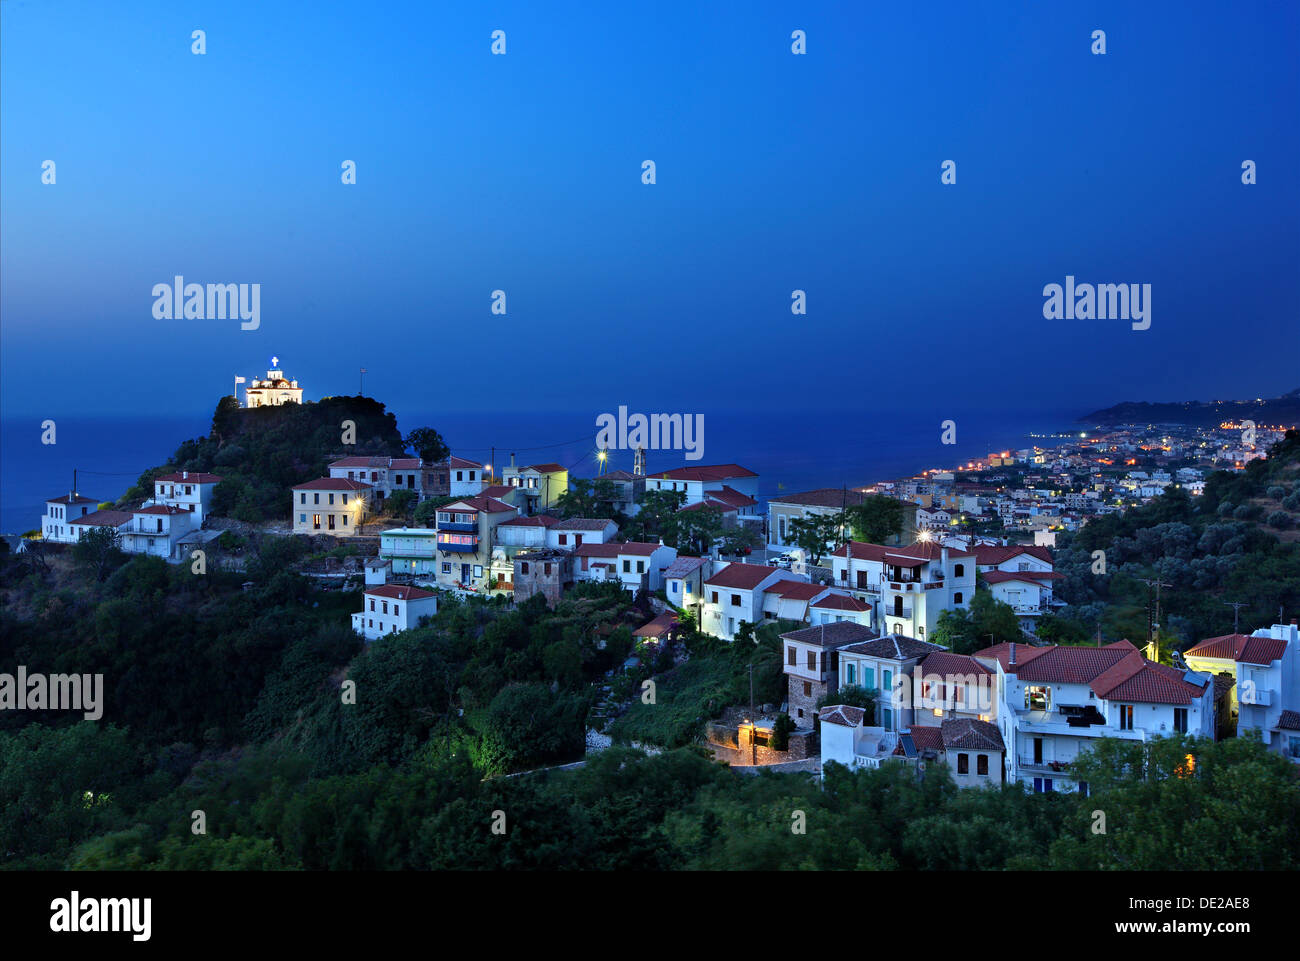 Night view of (Palaio) Karlovasi, Samos island, Greece. Stock Photo